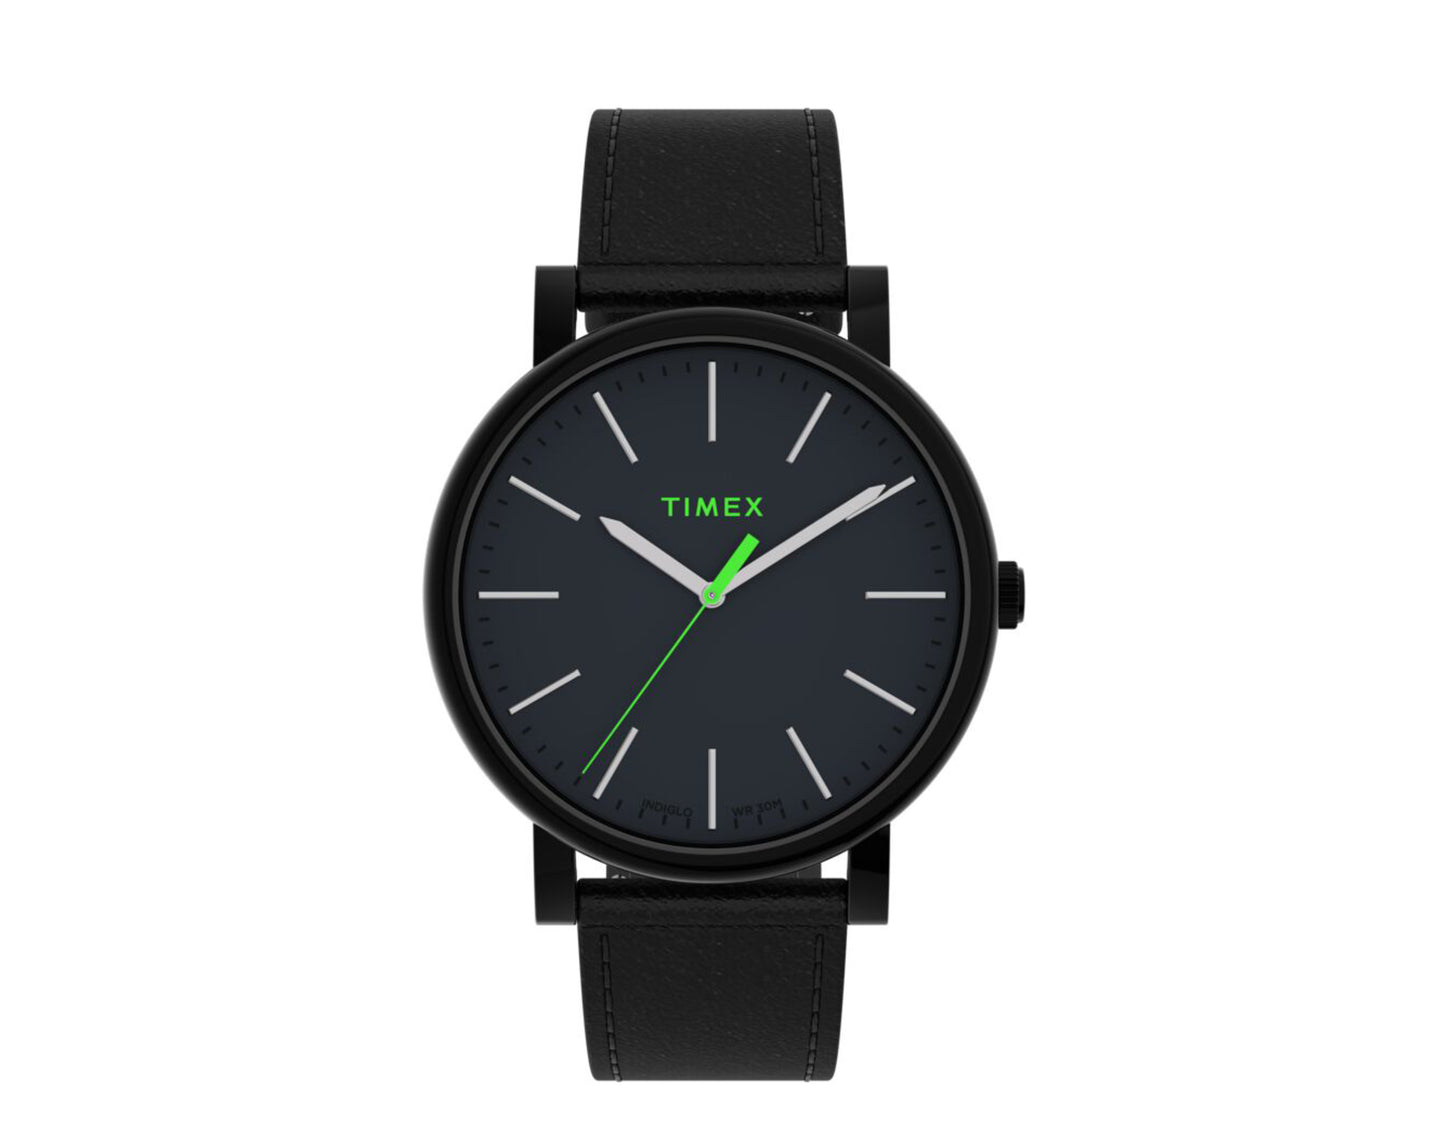 Timex Originals 42mm Leather Strap Black/Green Watch TW2U05700VQ